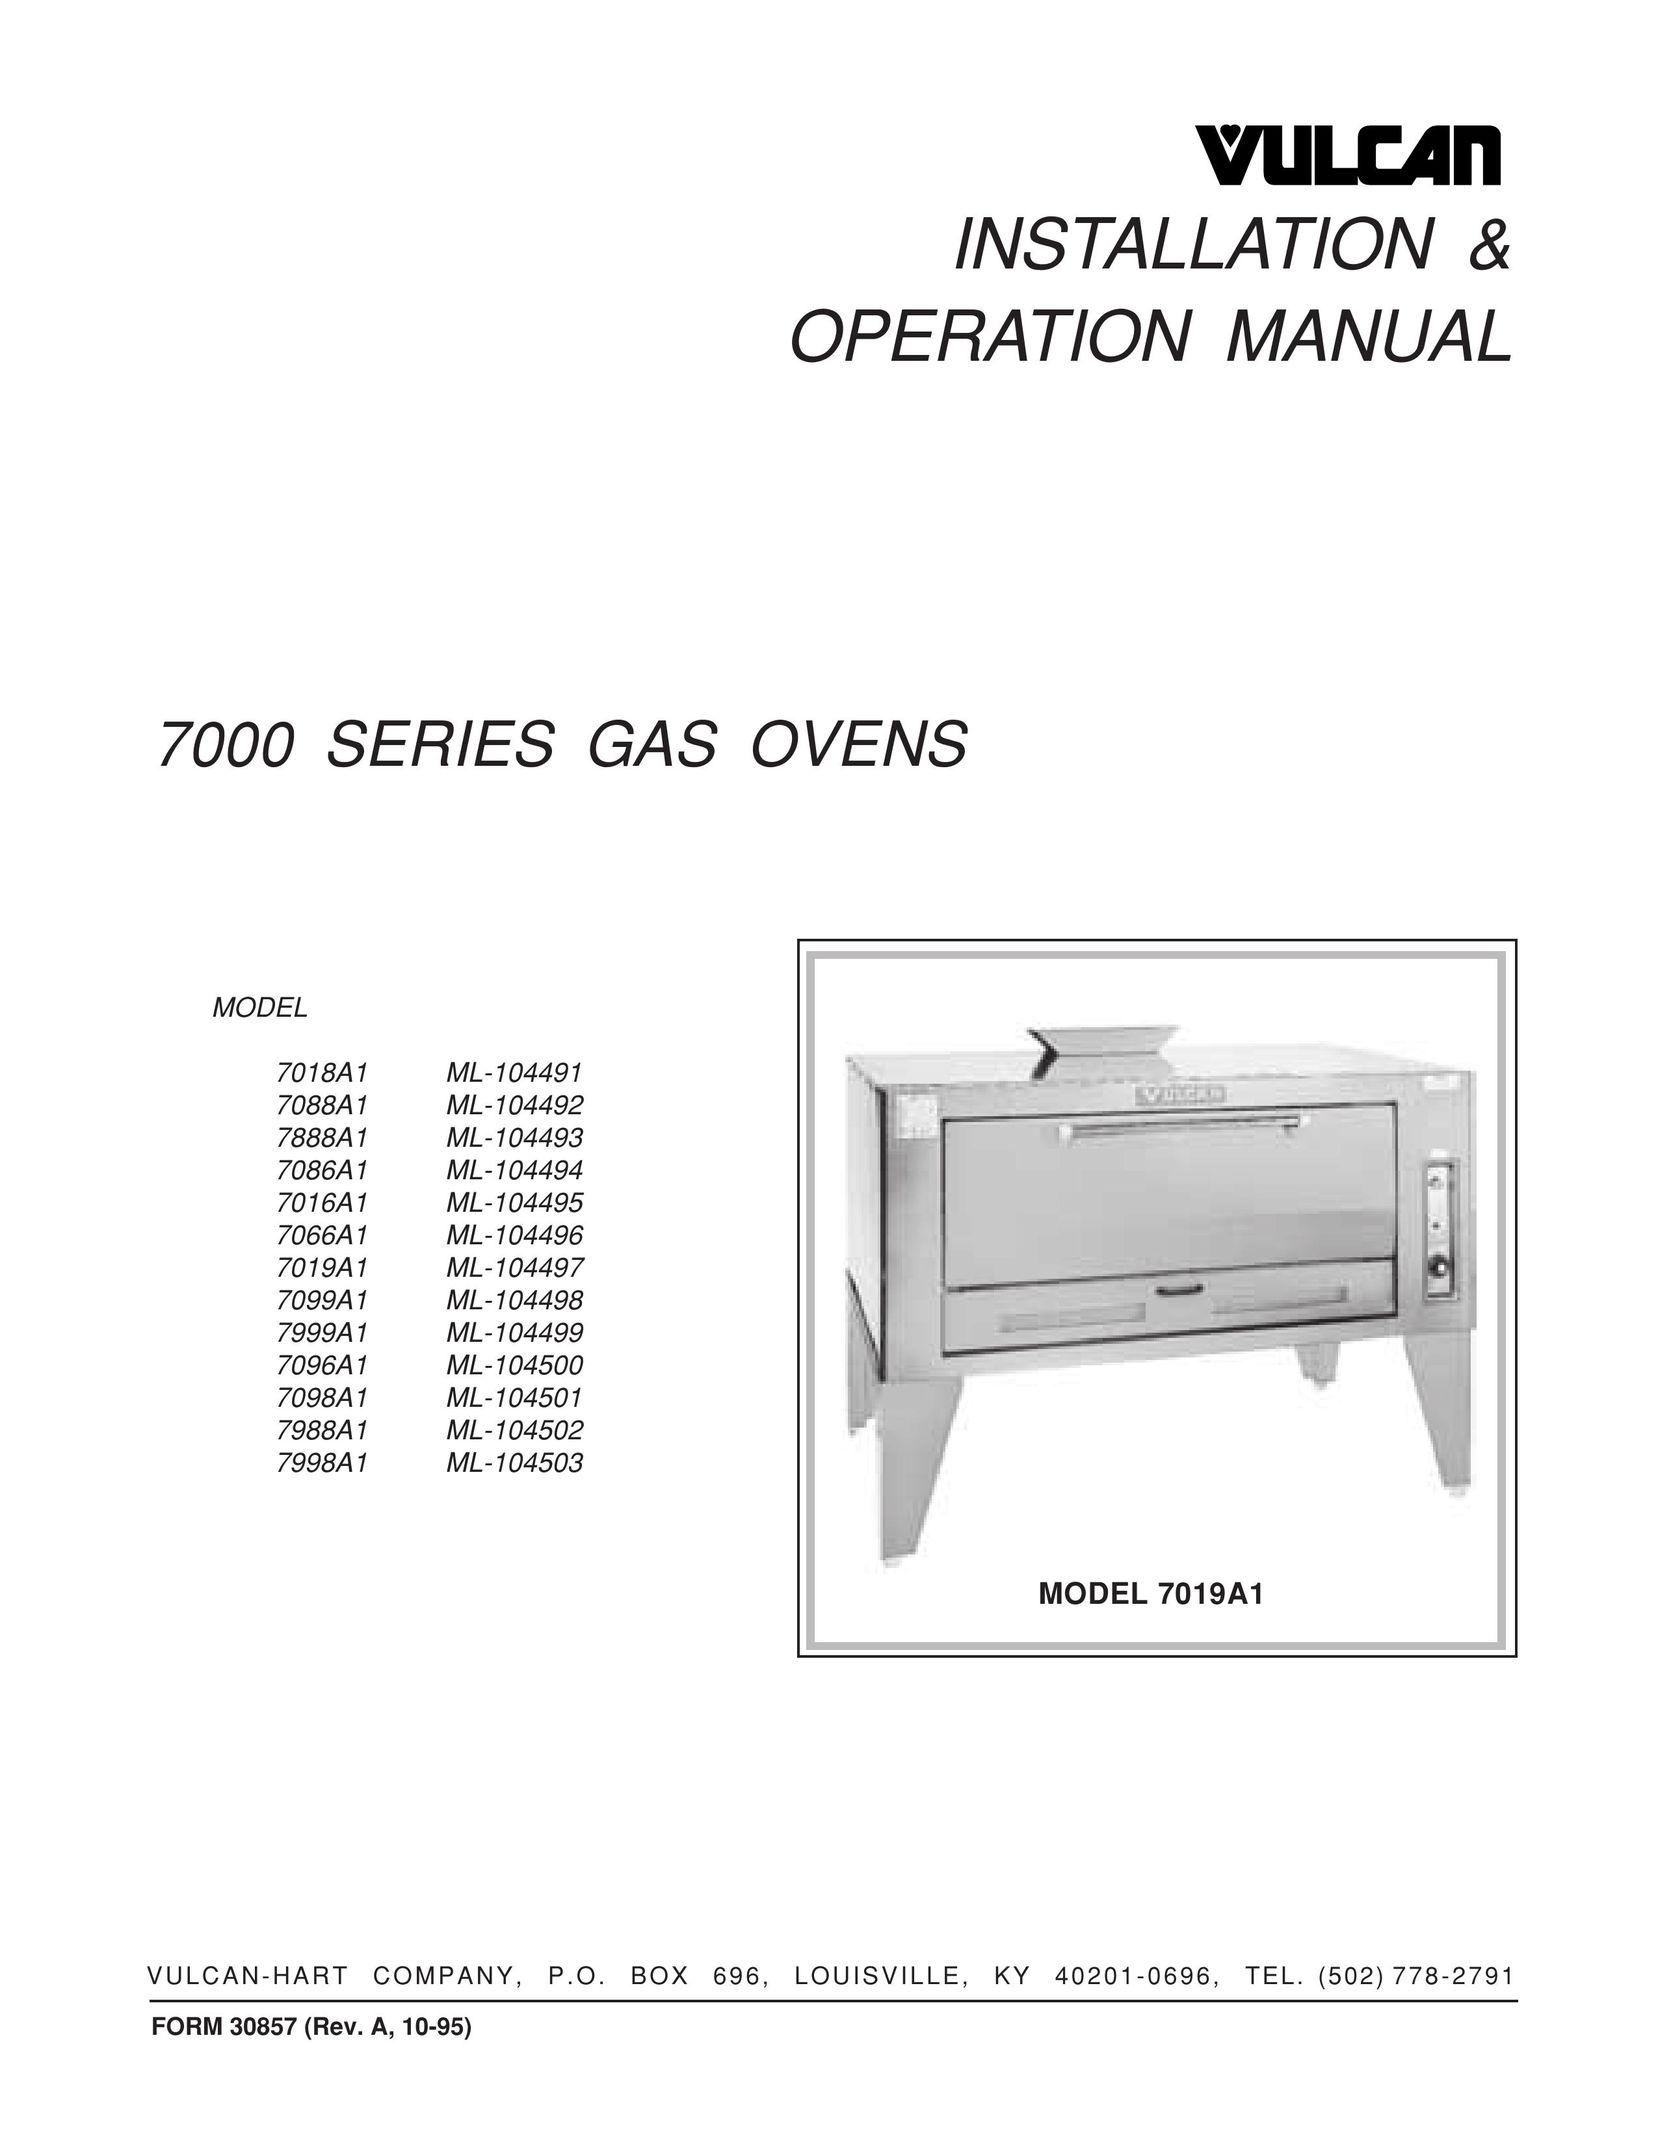 Vulcan-Hart 7088A1 ML-104492 Oven User Manual